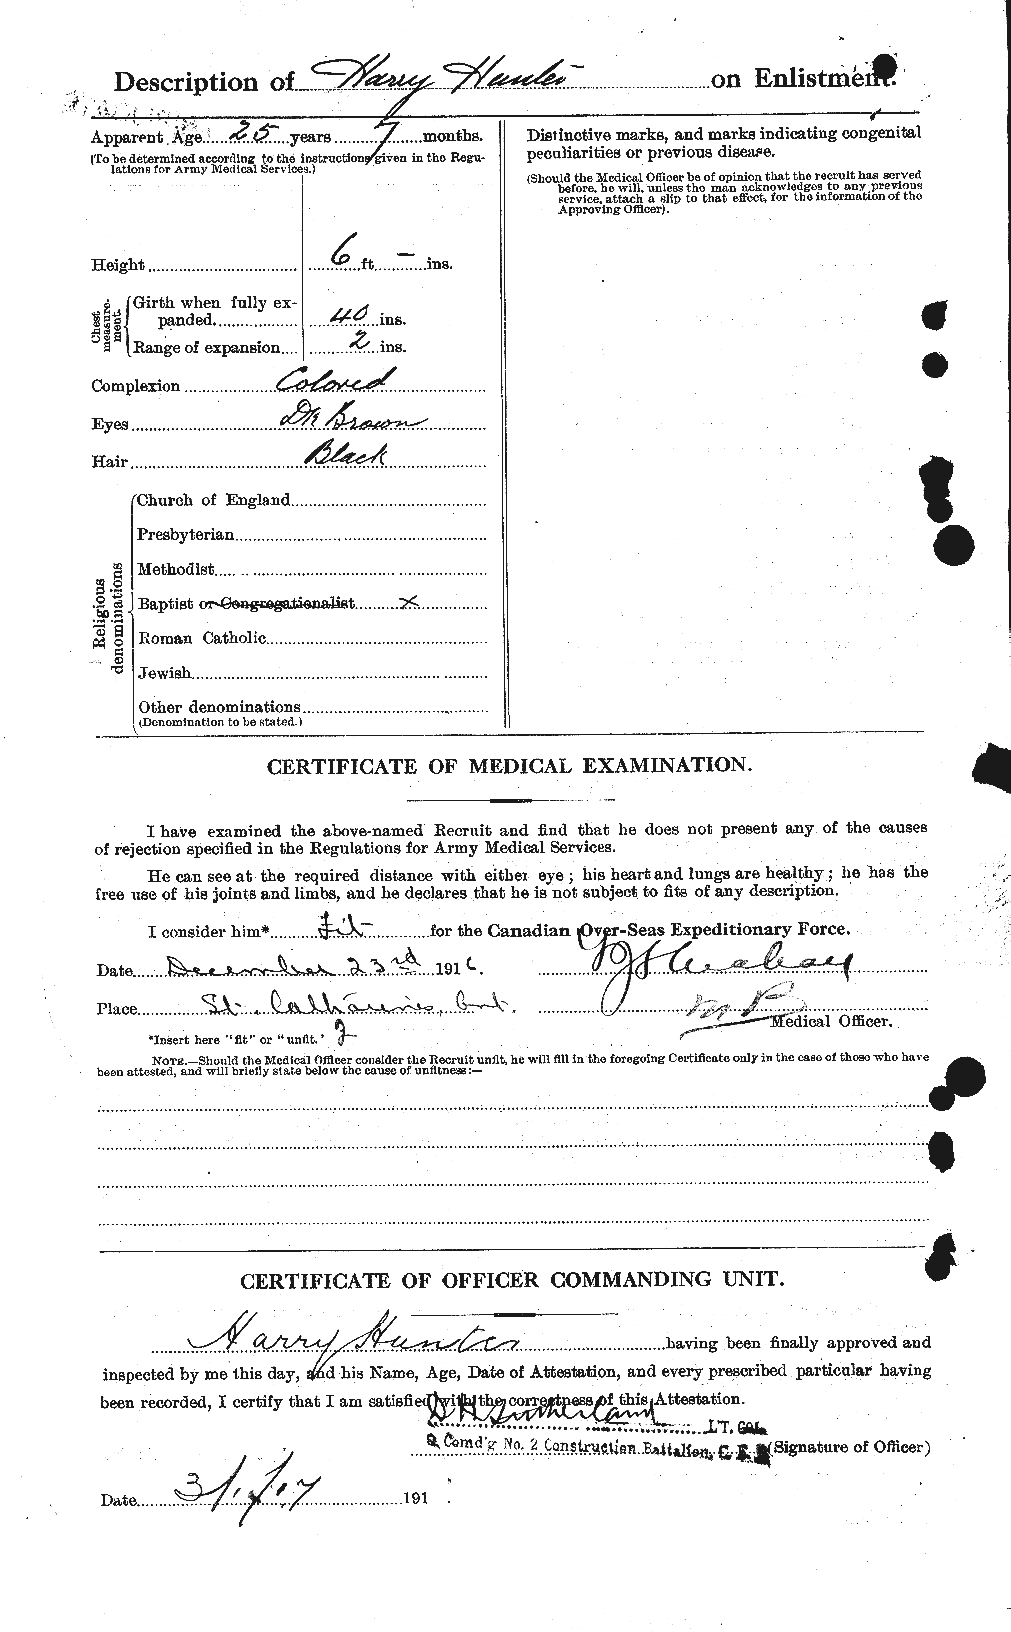 Dossiers du Personnel de la Première Guerre mondiale - CEC 409176b